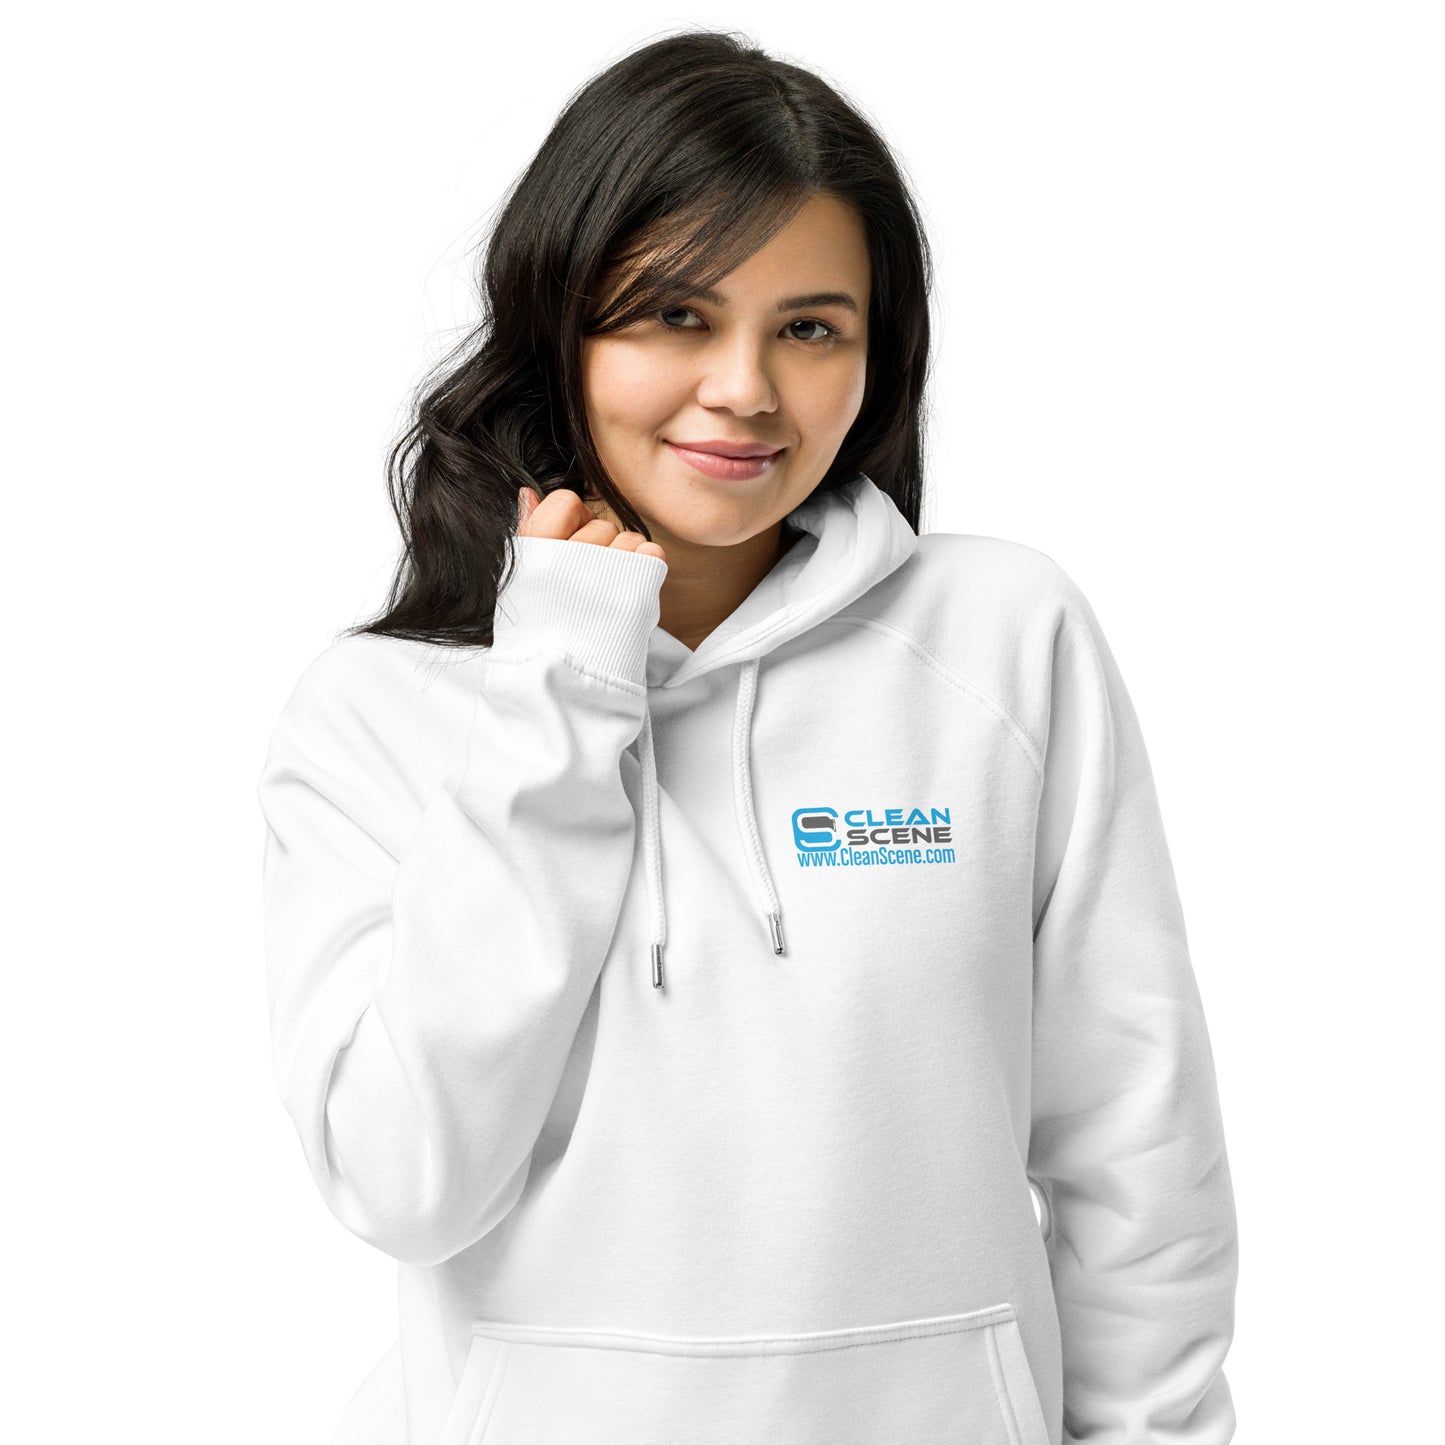 Clean Scene - Unisex eco raglan hoodie